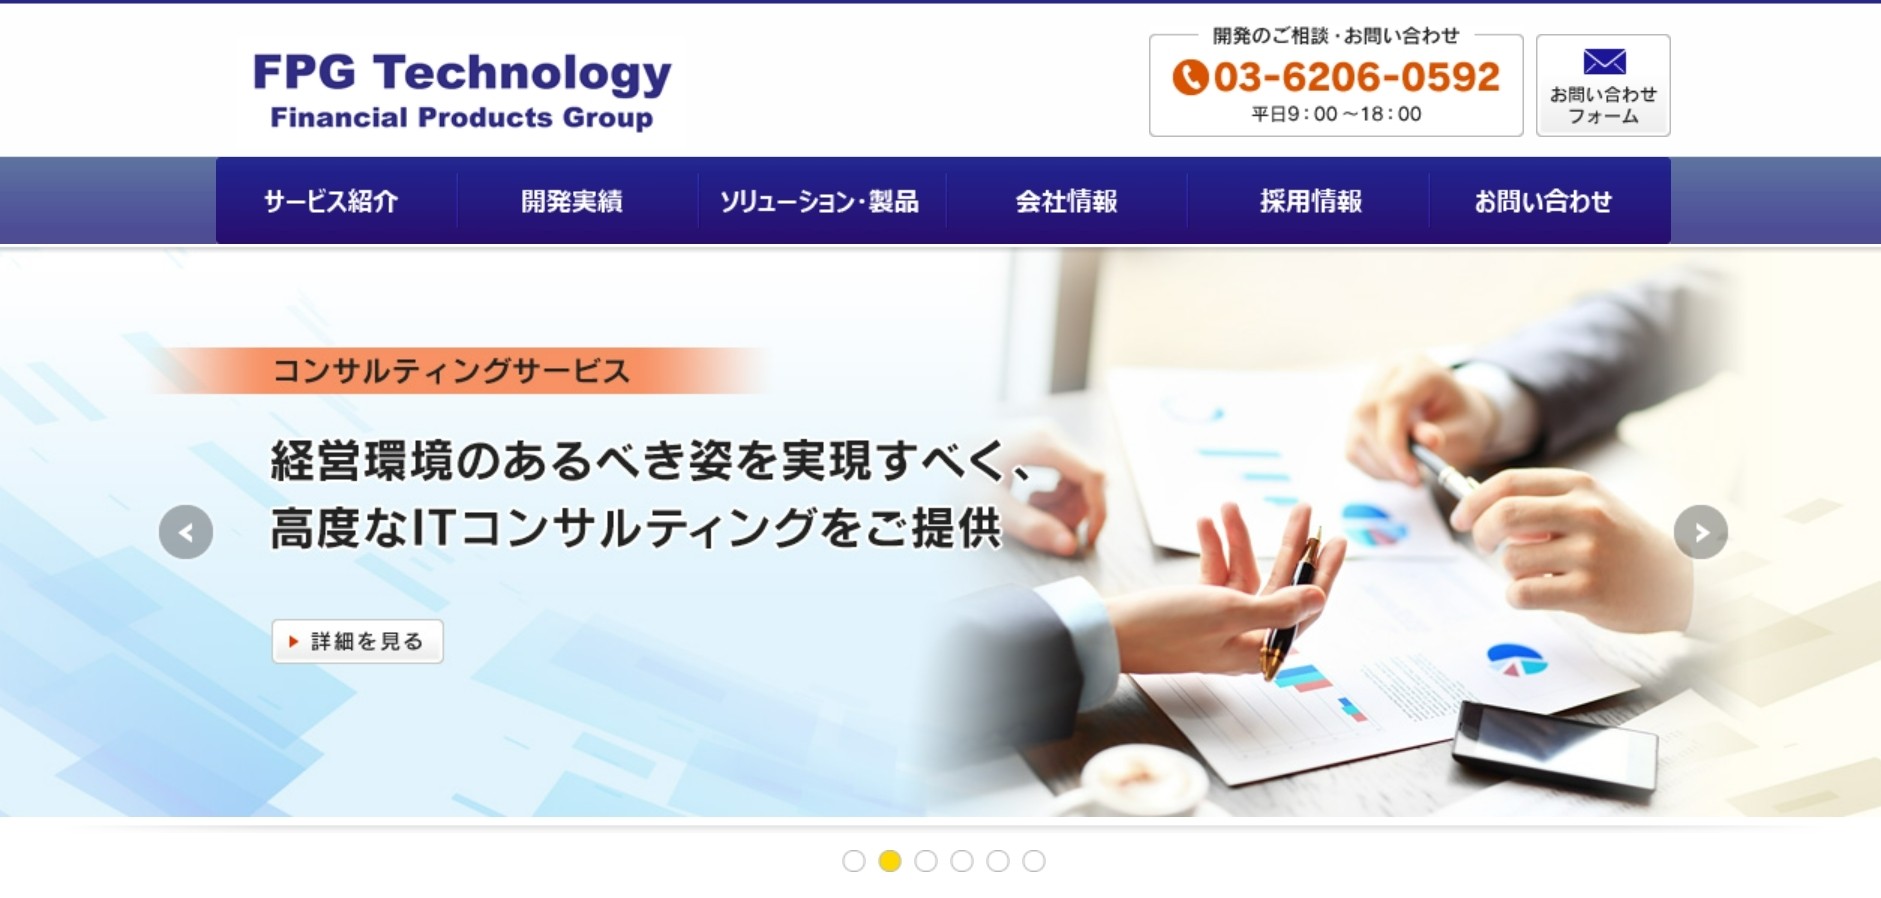 株式会社ＦＰＧテクノロジーの株式会社カタクラ・クロステクノロジー:メール配信システムサービス